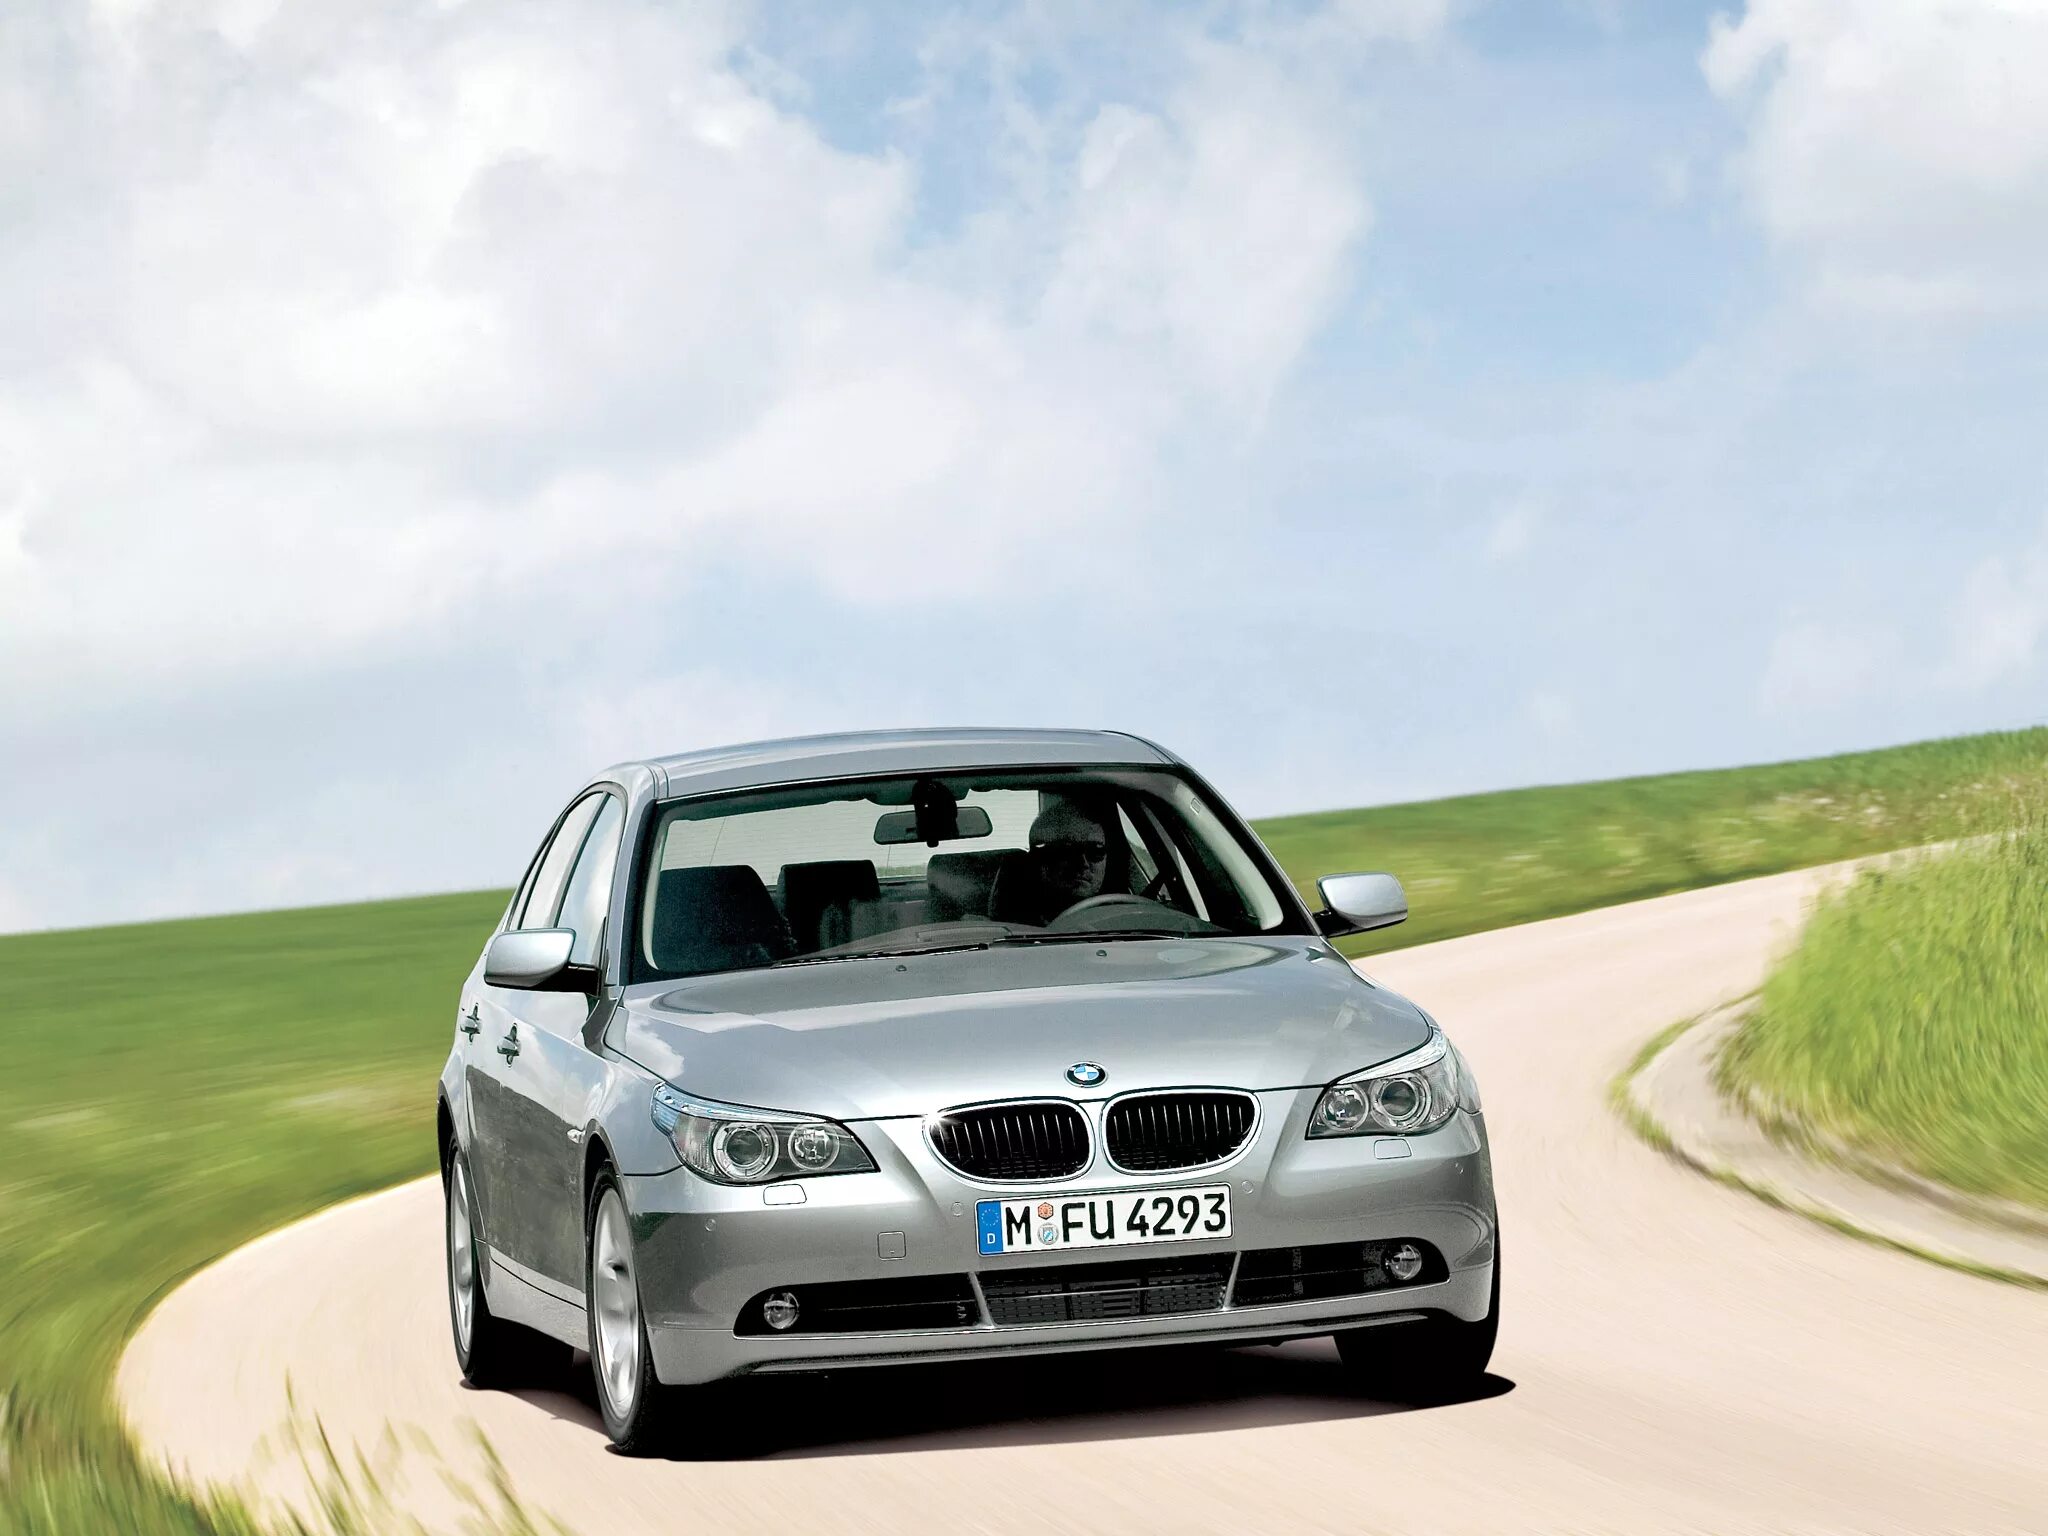 BMW 5 e60 2004. BMW 5 e60 2003. BMW 5 Series e60 2003. Bmw 5 series e60